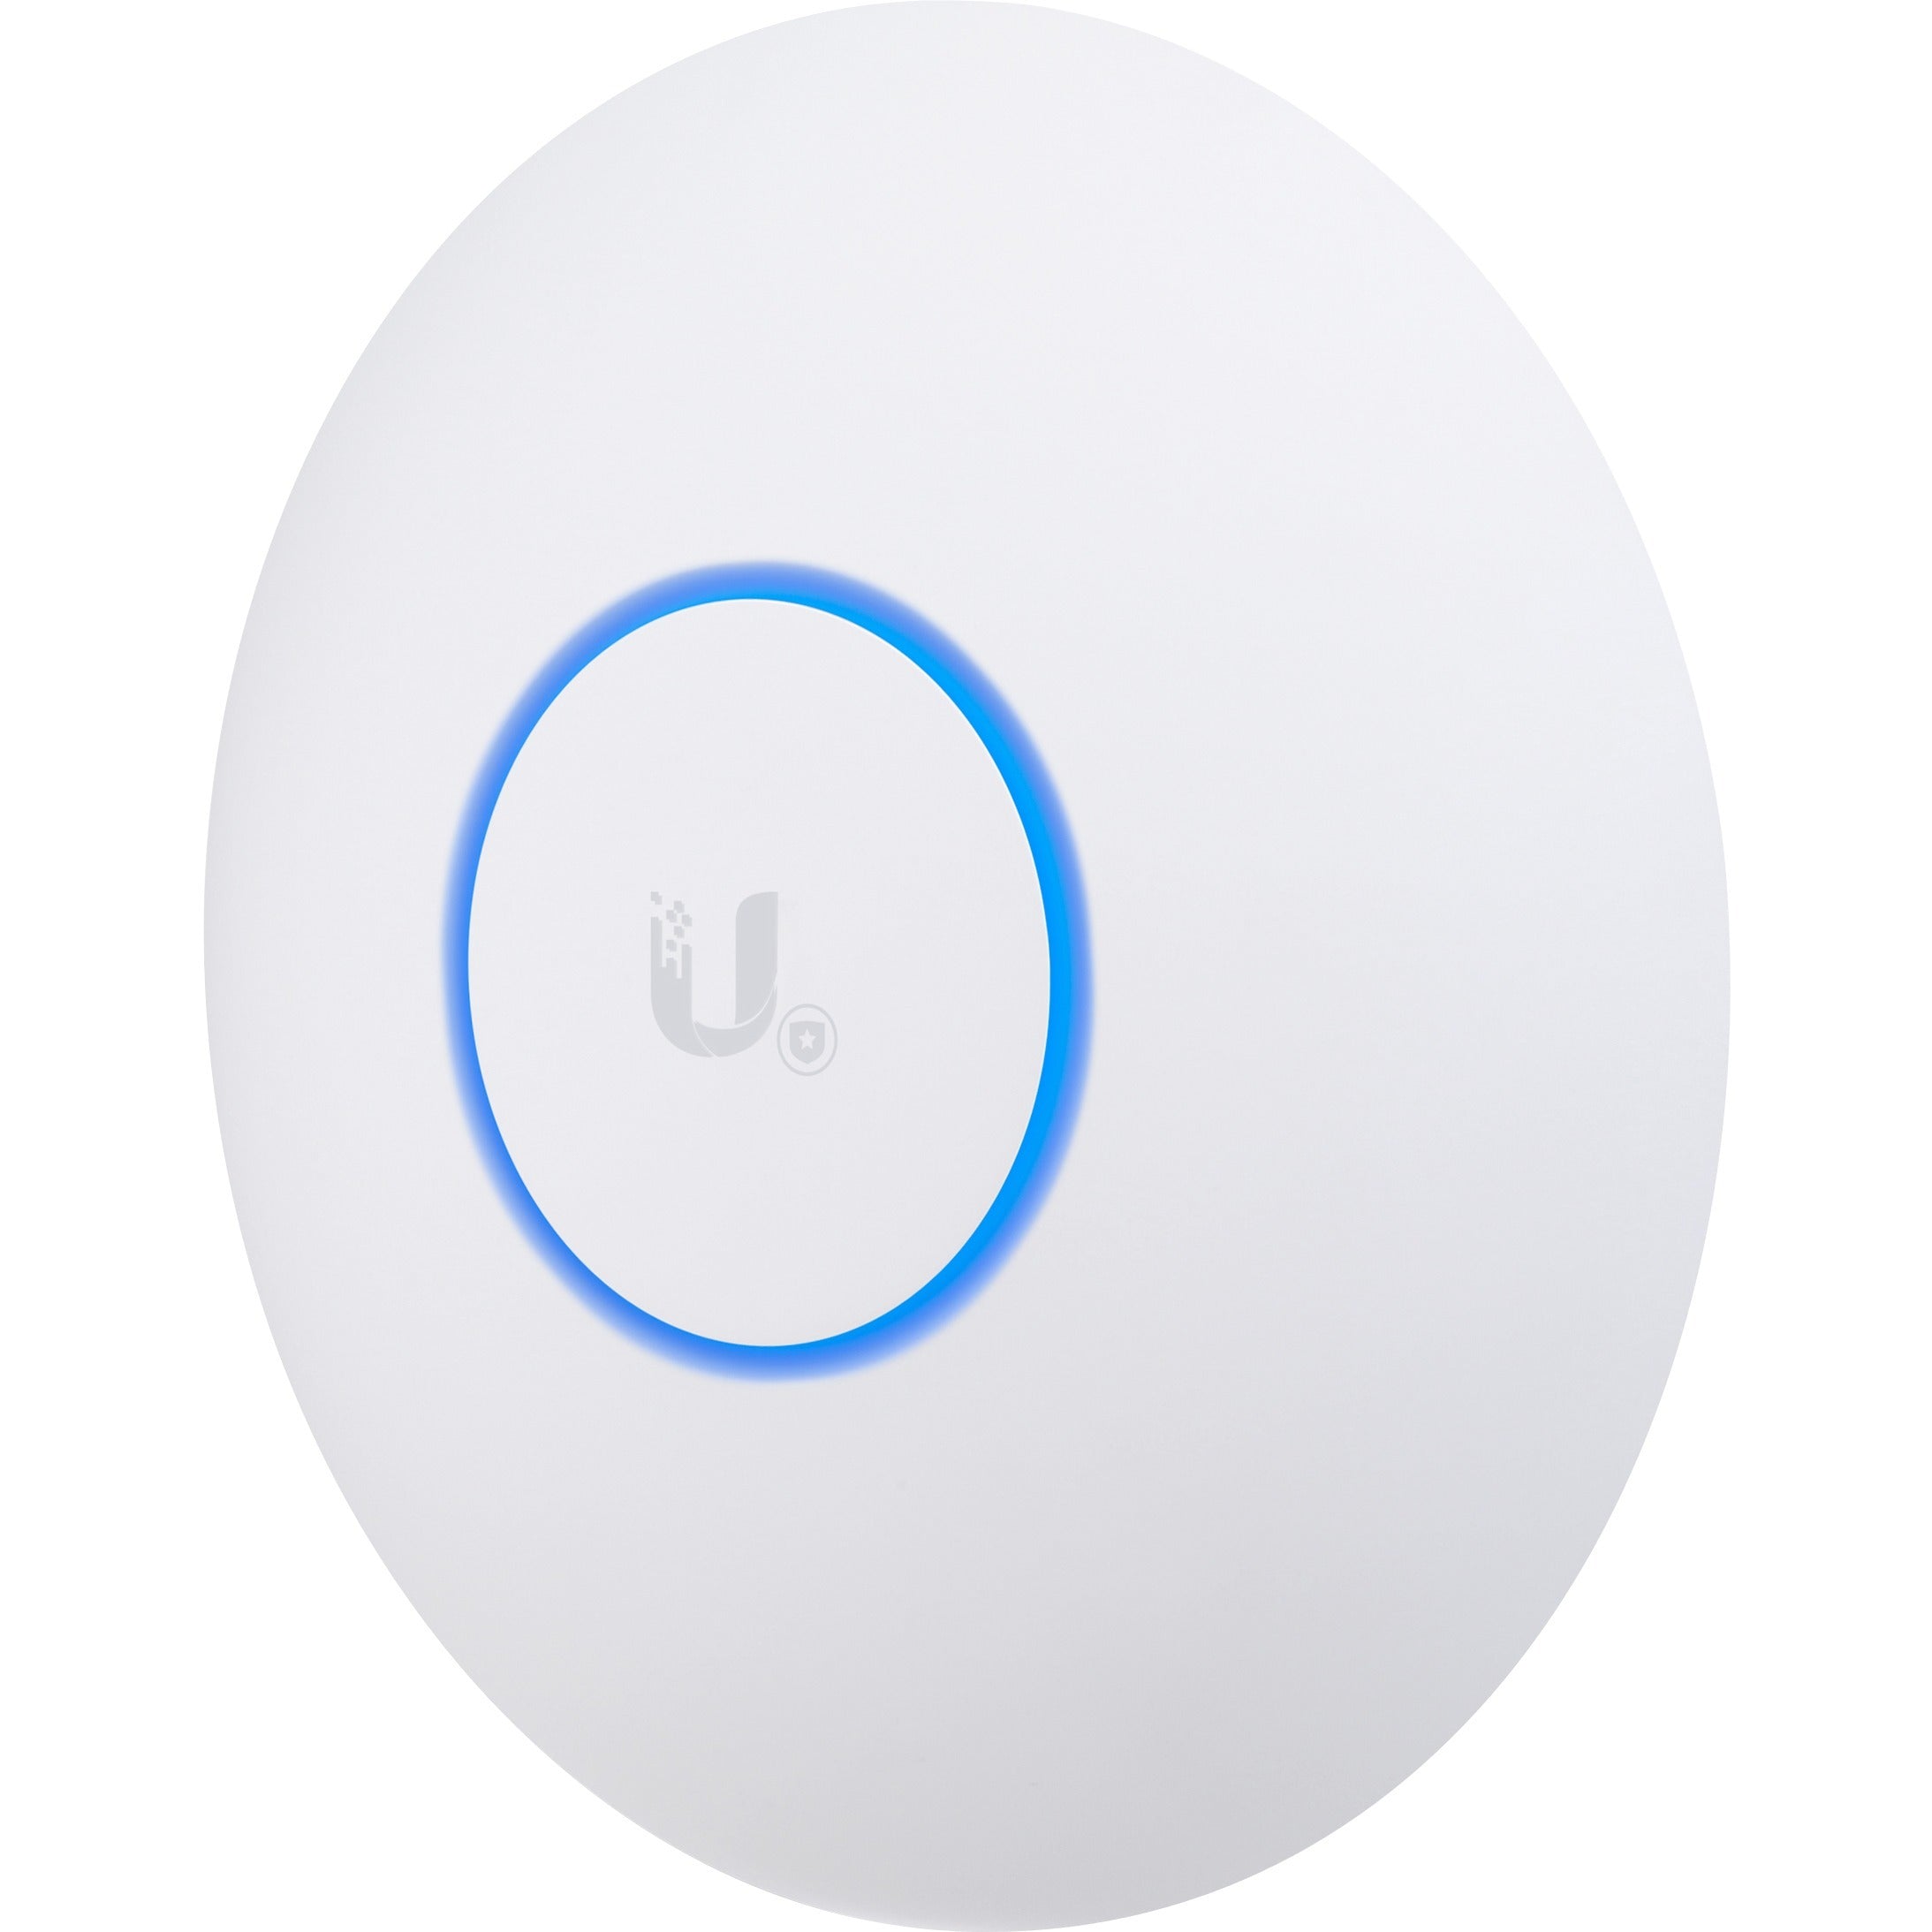 UBIQUITI UniFi AC HD (UAP-AC-HD) 802.11ac Wave 2 Enterprise Wireless Wi-Fi  Access Point